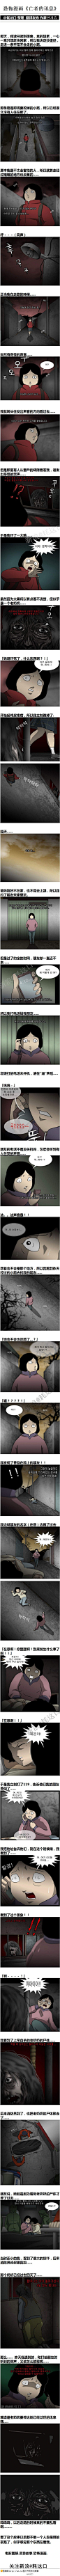 韩国恐怖漫画《亡者的讯息》根据真人真事画出来的！想到故事是真的就觉得得发颤！走夜路都会感觉有双眼睛在盯着我......啊啊啊啊啊啊啊啊啊一个凄凉的恐怖故事！！